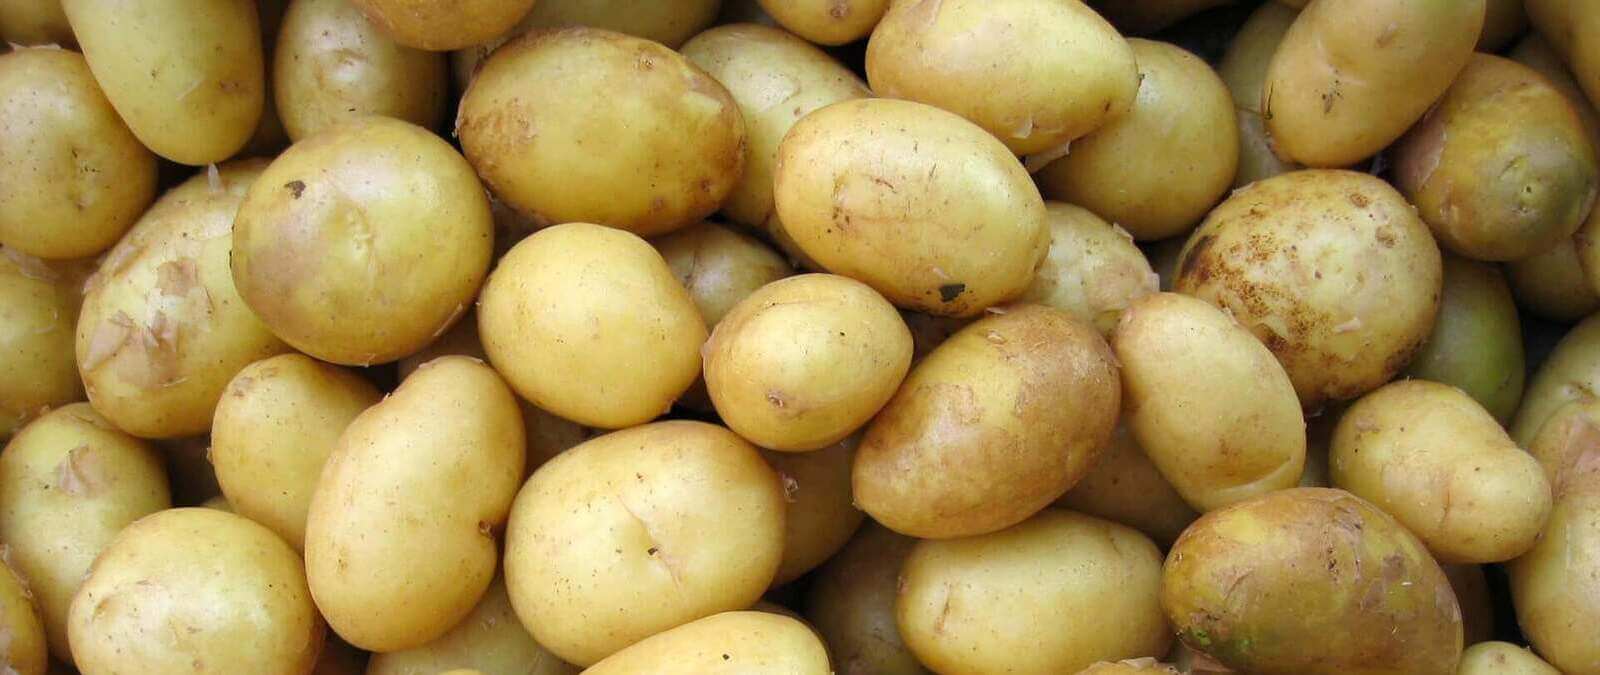 Patatas sin raíces, ¿cómo conseguirlo?